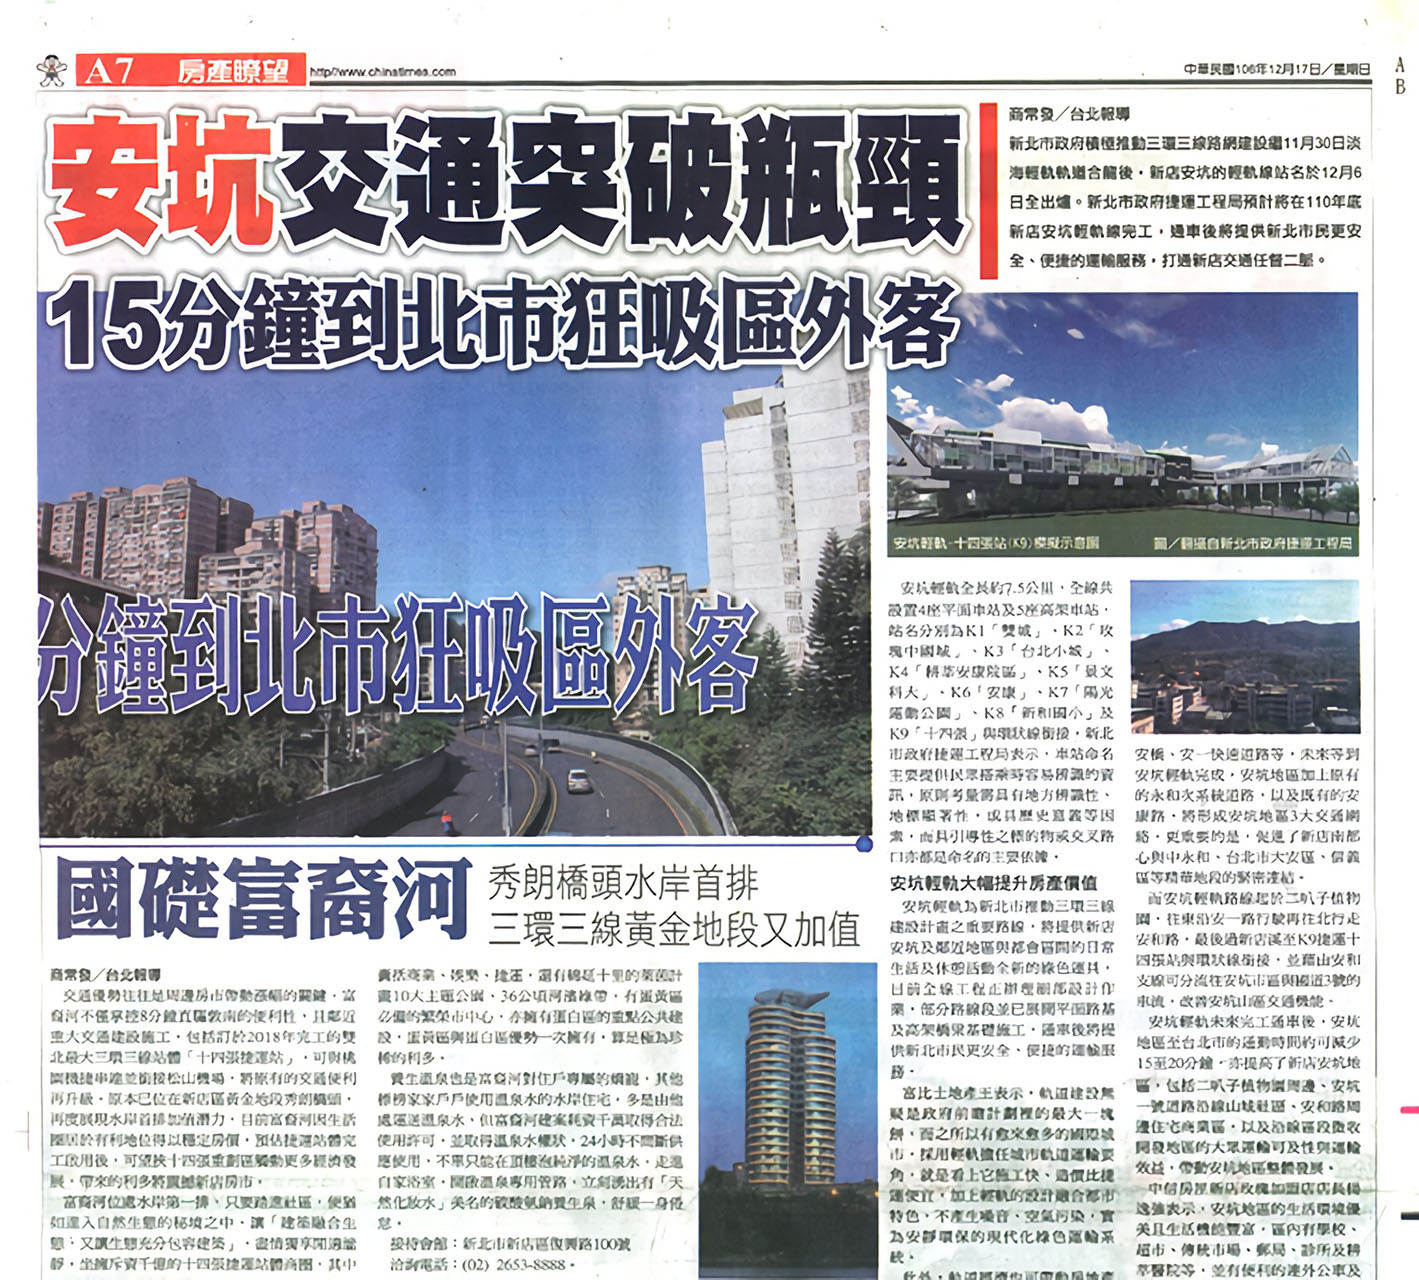 中國時報：國礎富裔河 秀朗橋水岸首排 三環三線黃金地段又加值